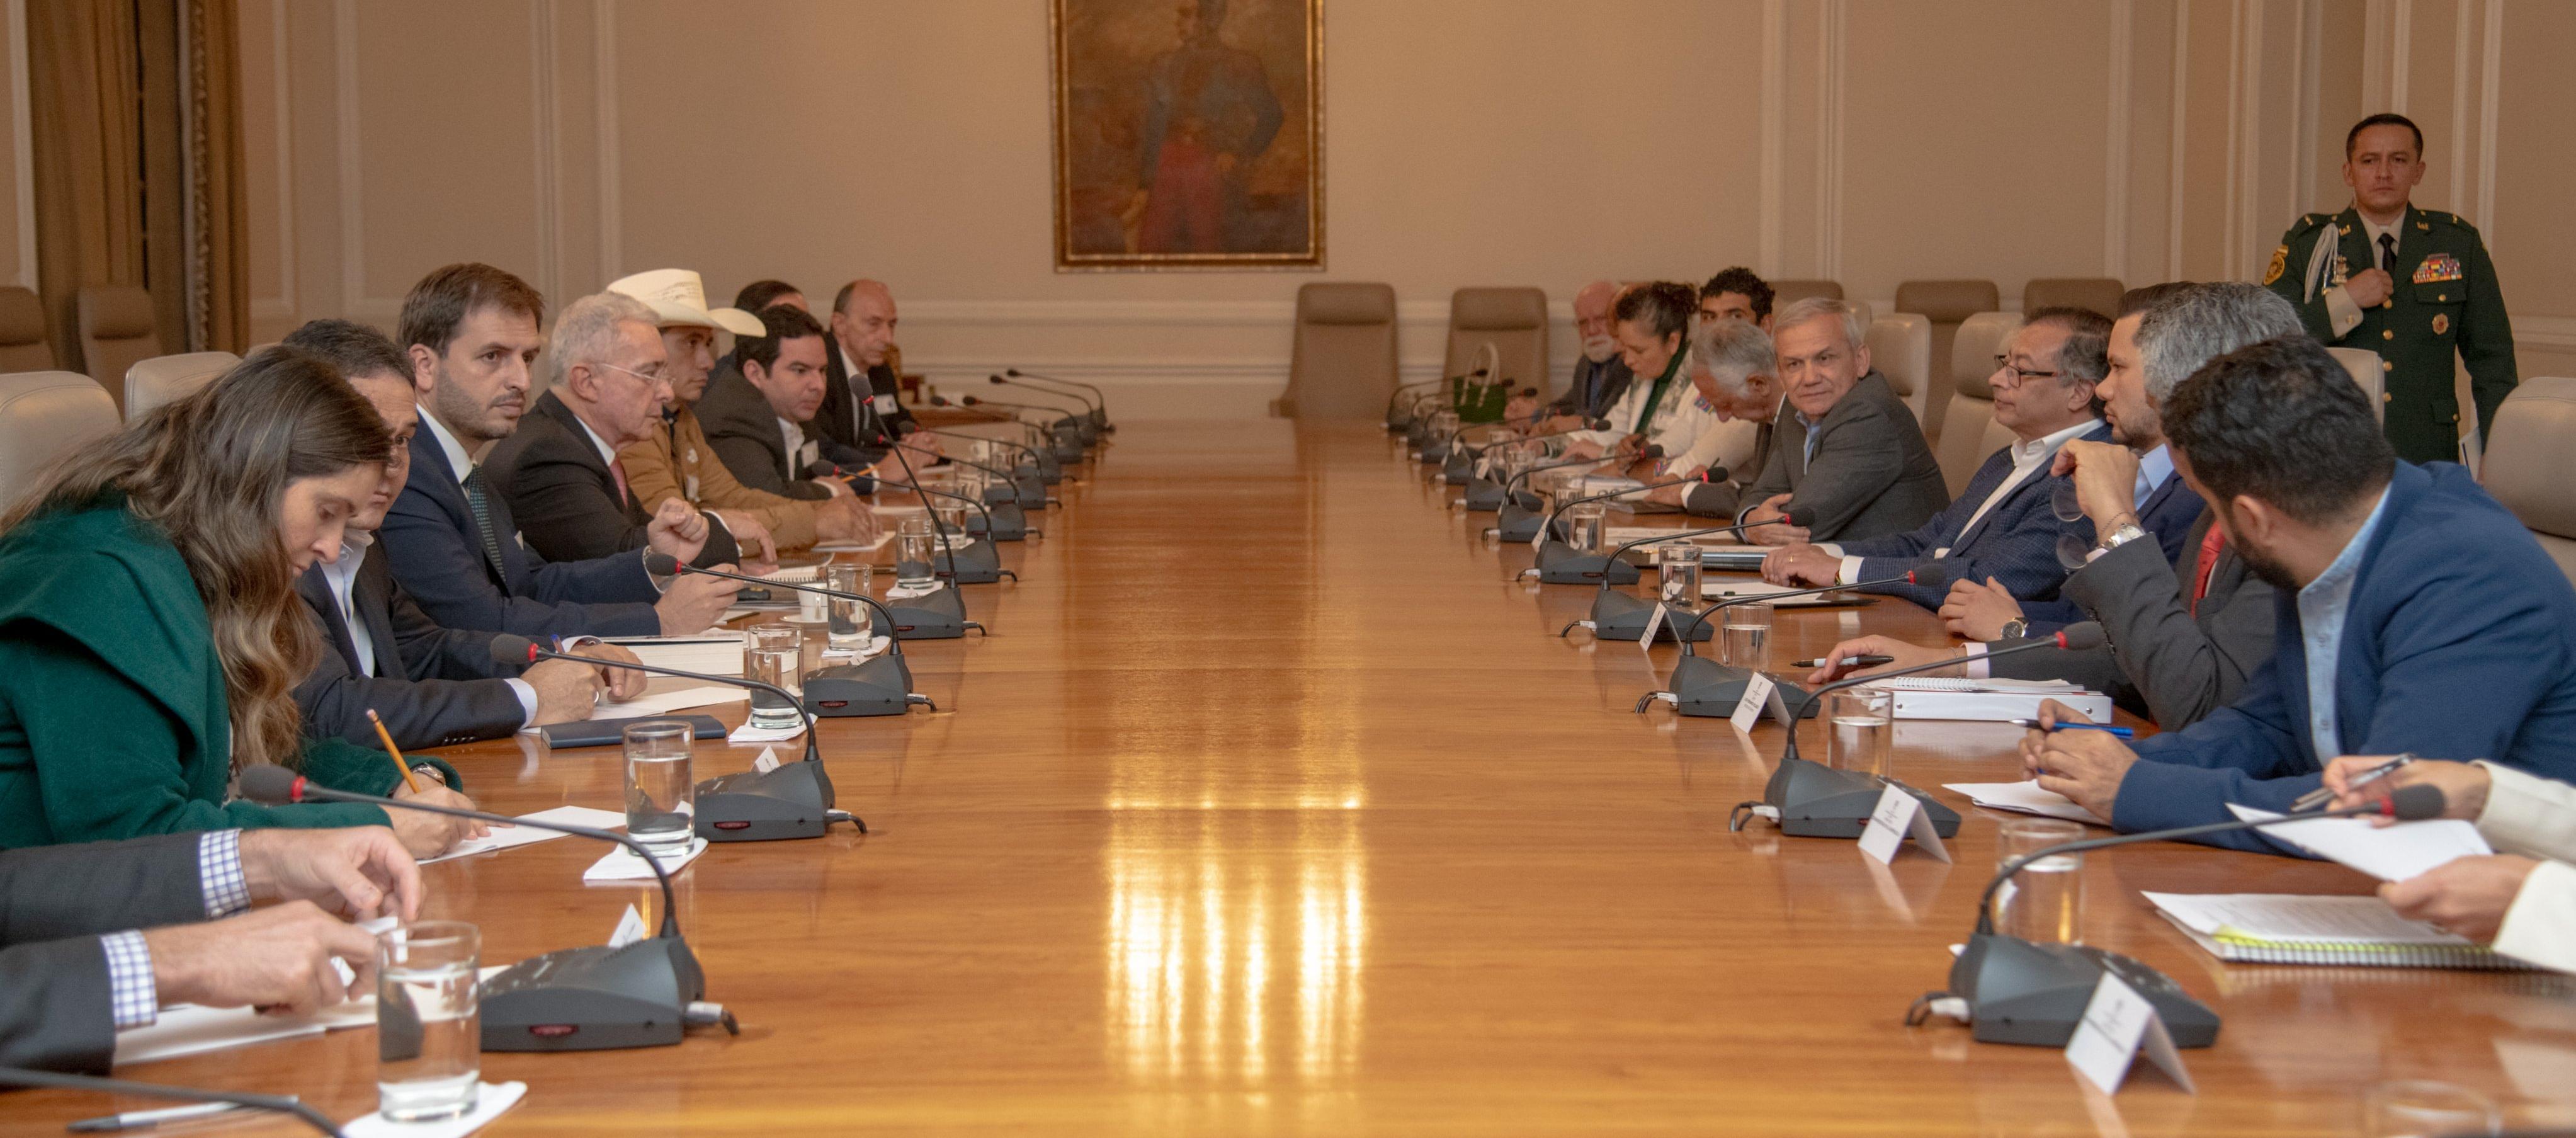 El encuentro entre el presidente Petro y el expresidente Alvaro Uribe